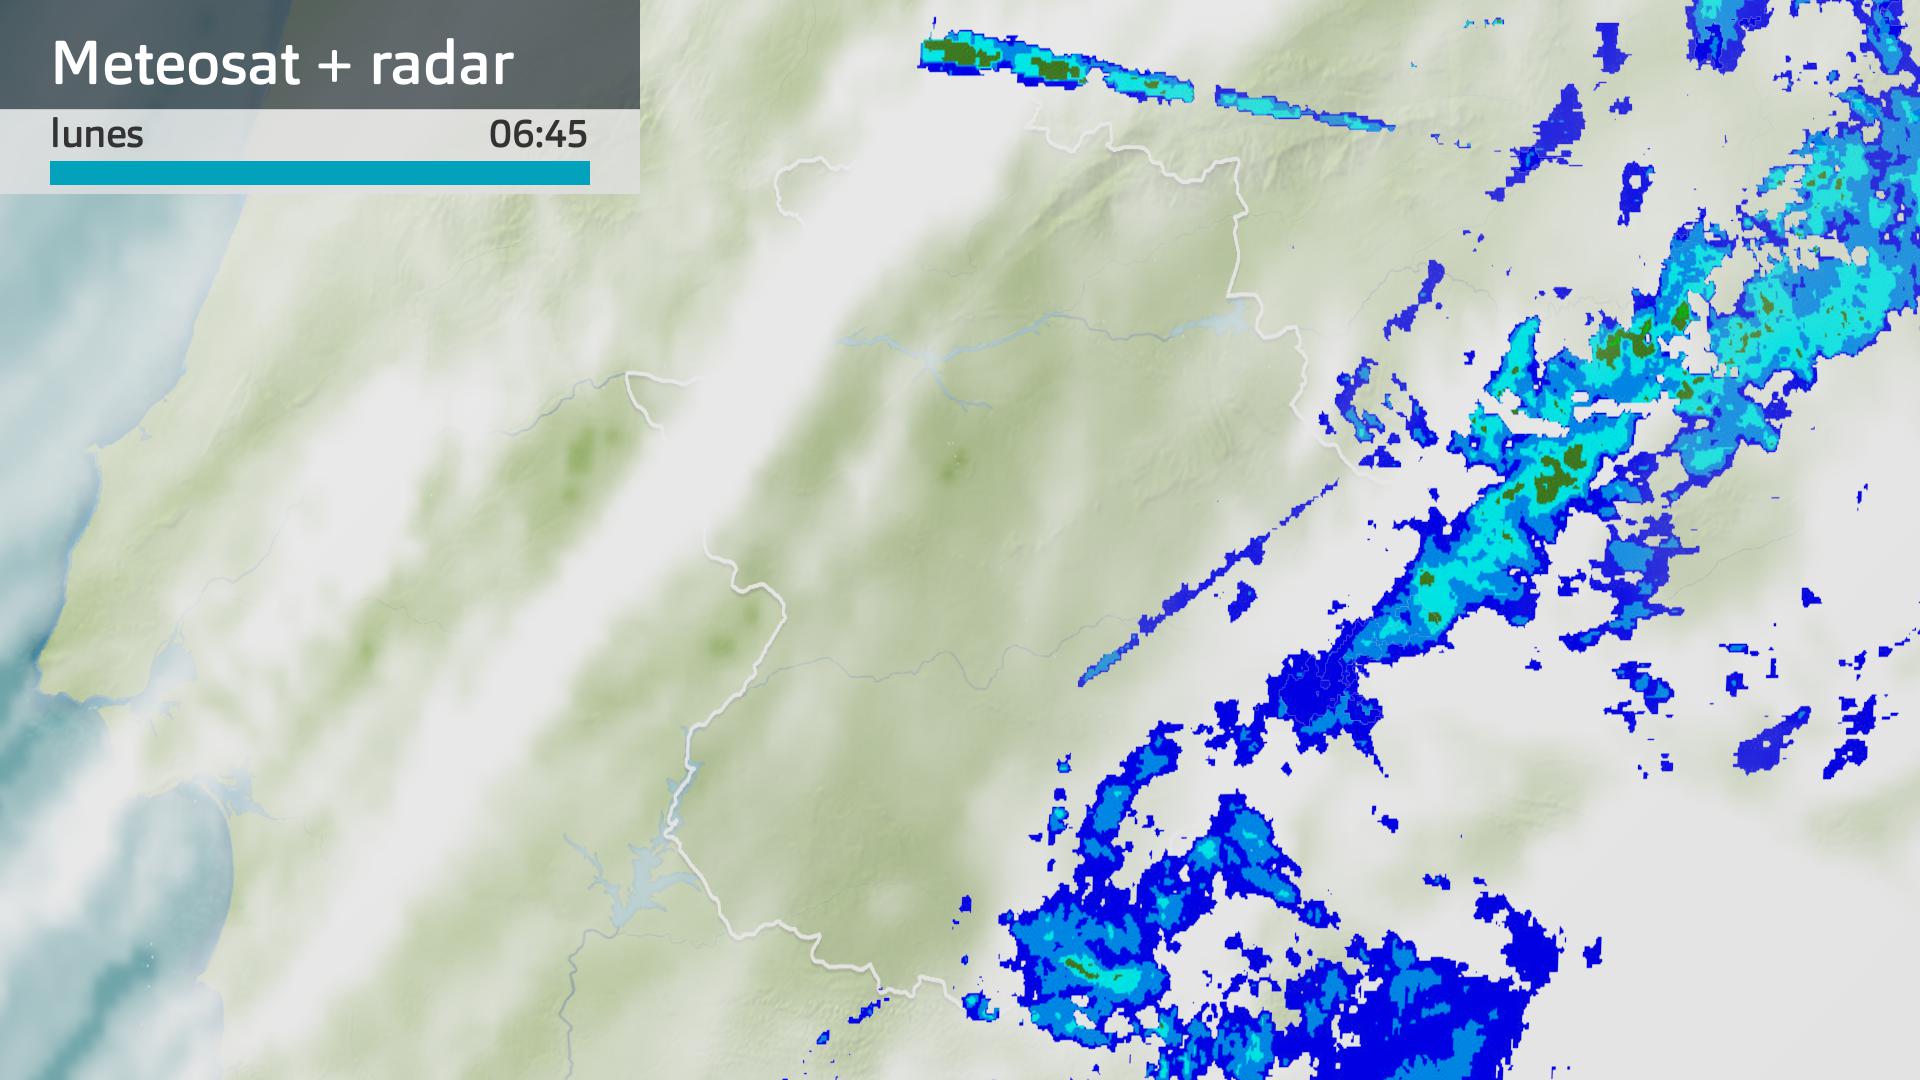 Imagen del Meteosat + radar meteorológico lunes 25 de marzo 6:45 h.